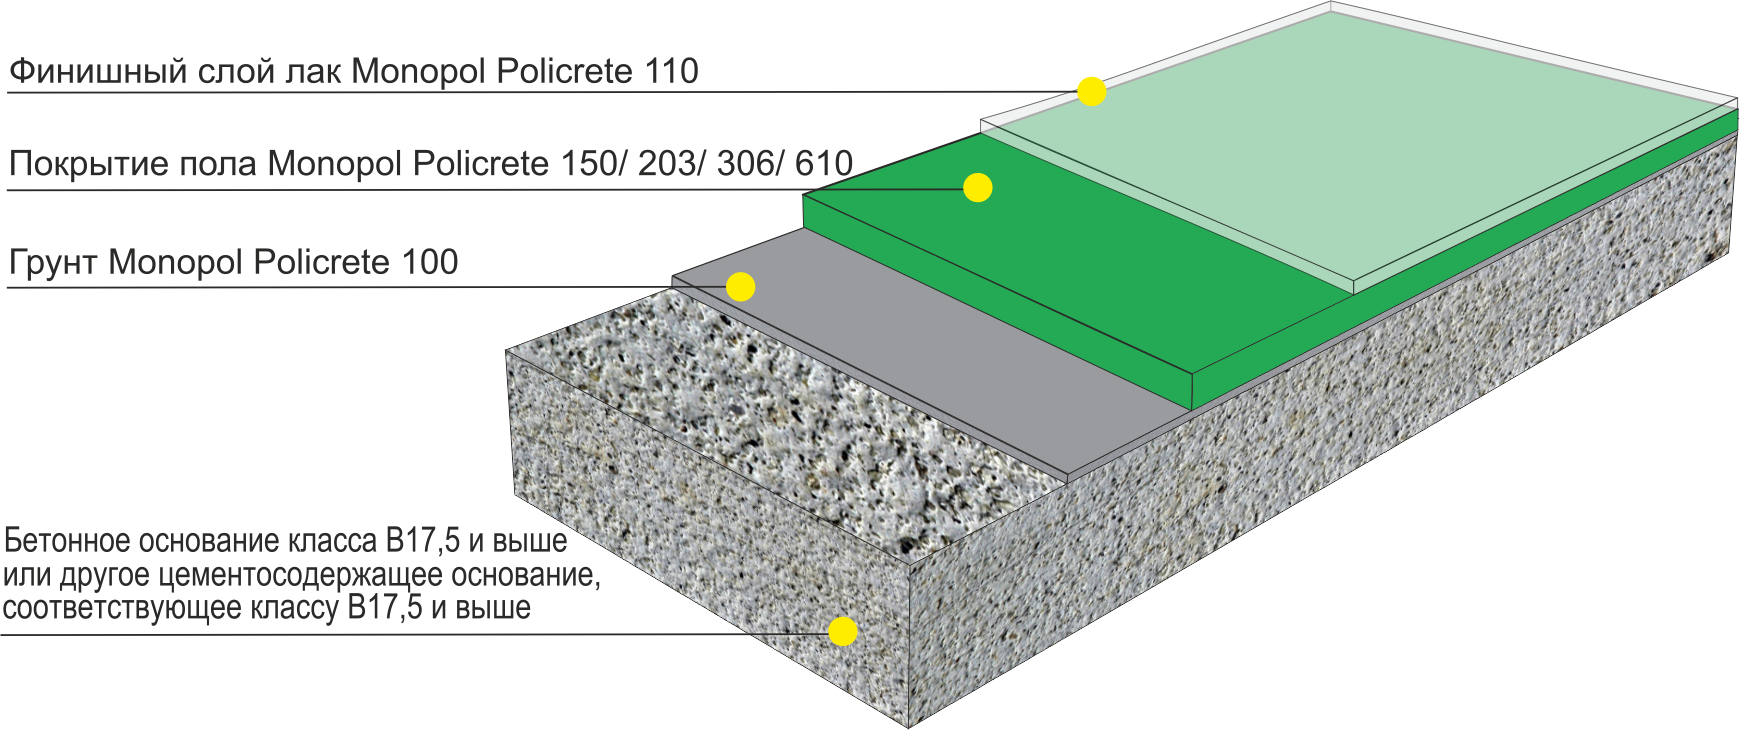 Железнение бетона: технология ожелезнения бетонных поверхностей пола